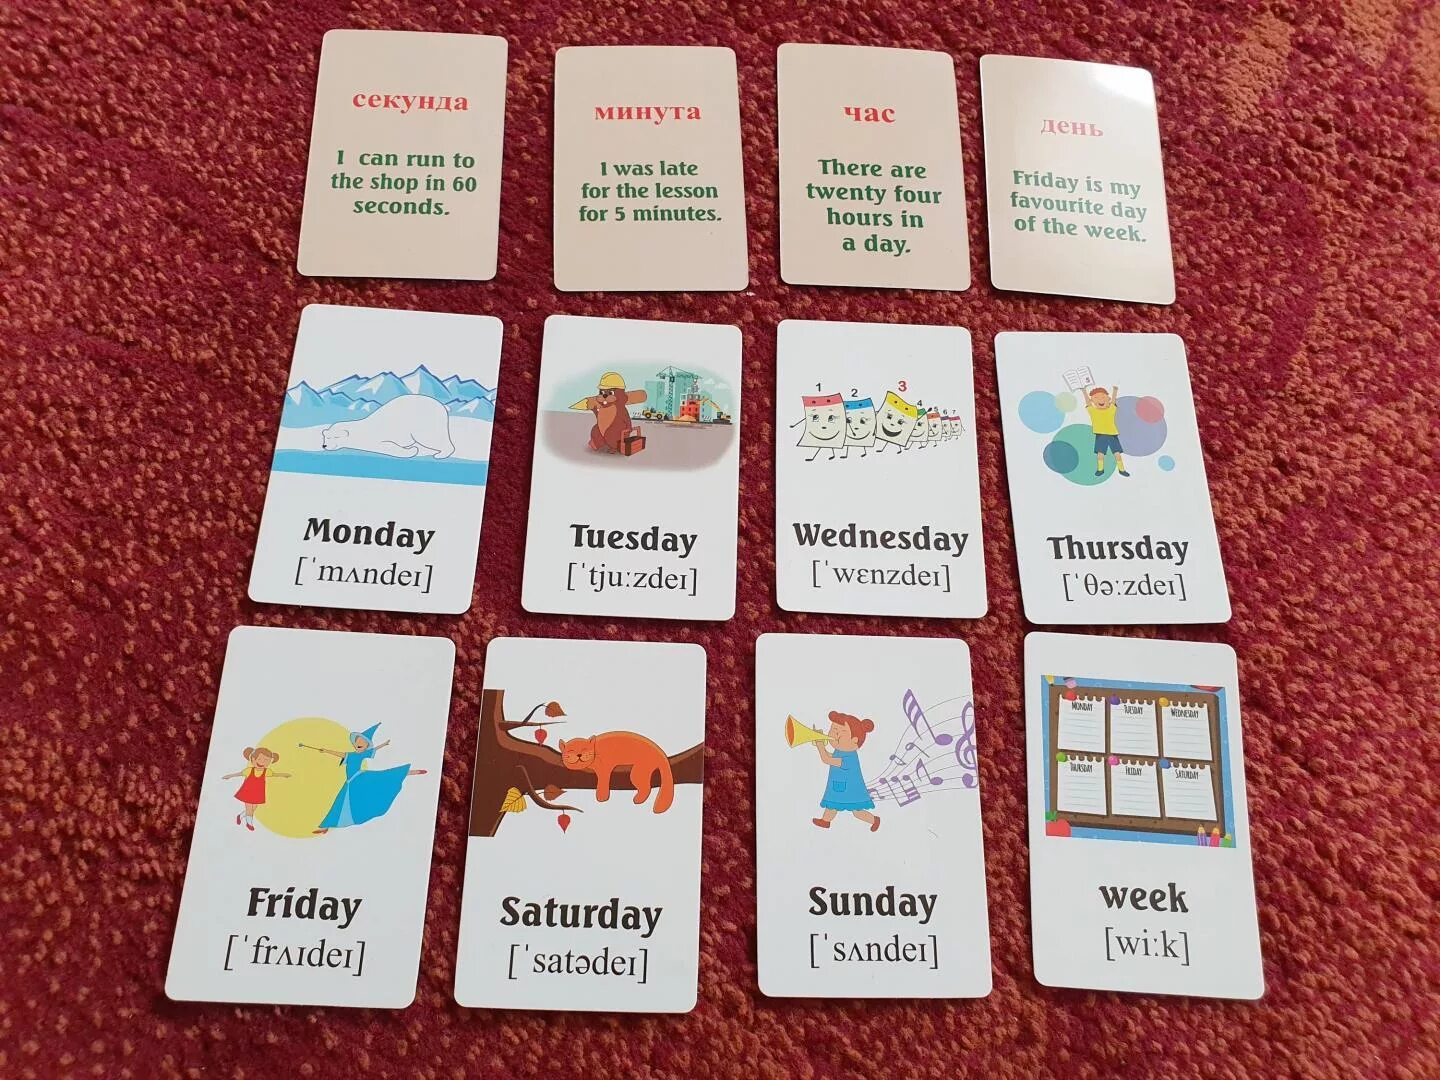 Дни недели на английском карточки. Карточки с днями недели на английском. Дни недели карточки на английском языке. Карточки с днями недели по английскому языку. Дни недели по английски каждый день